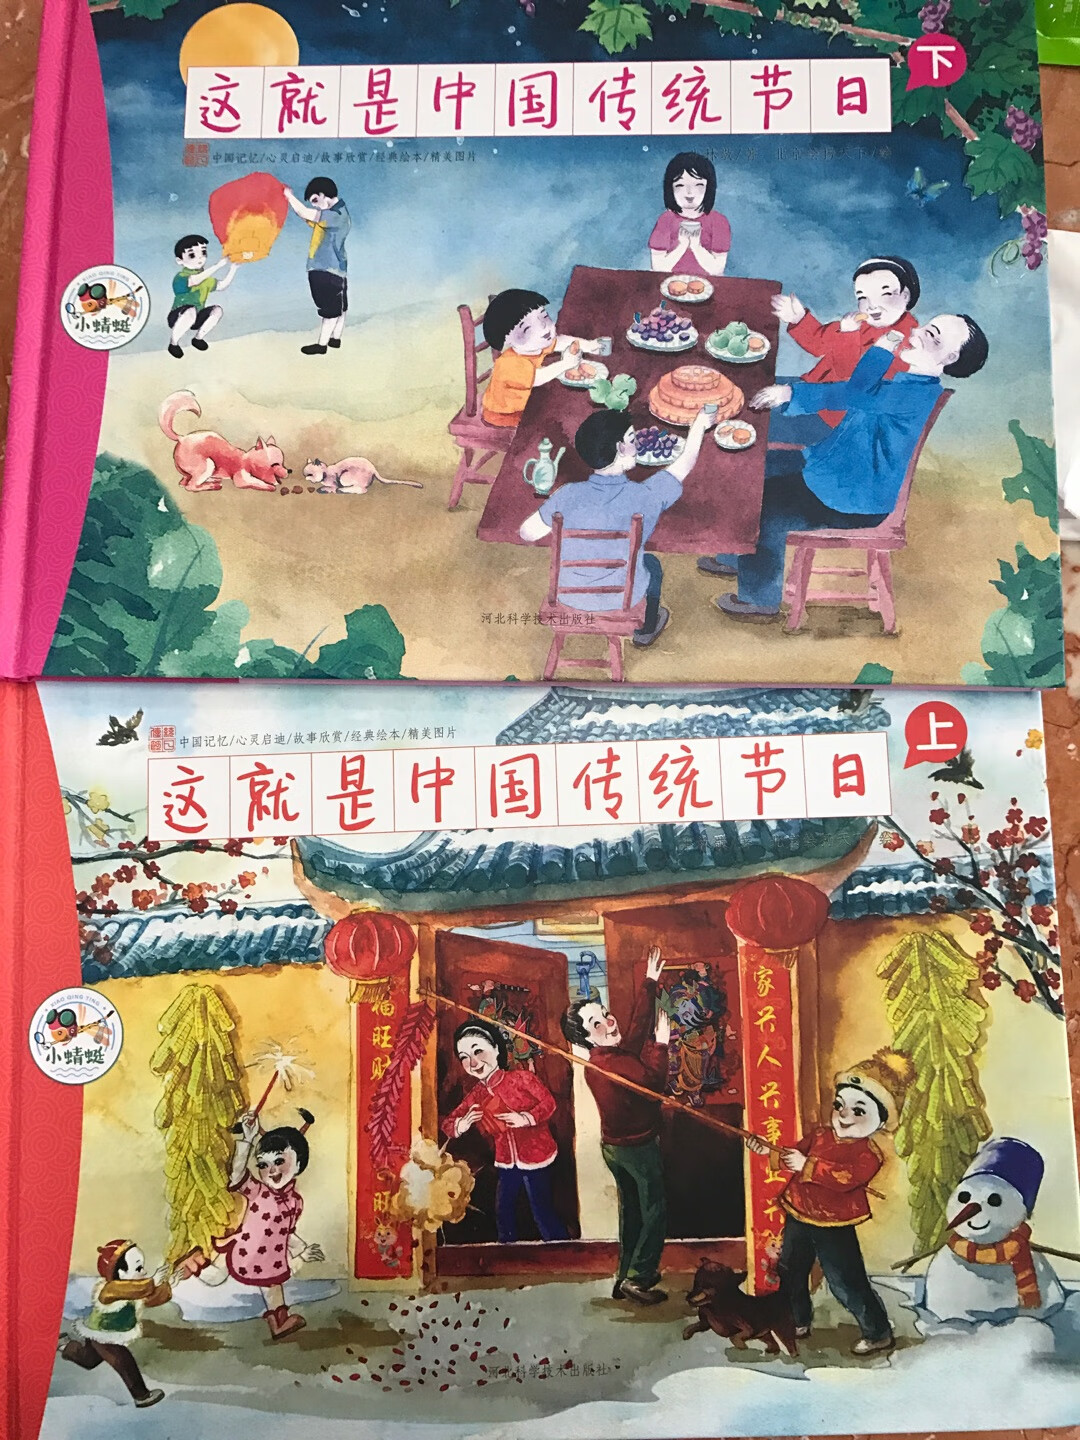 这个不错，可以让孩子了解一下中国的节日。